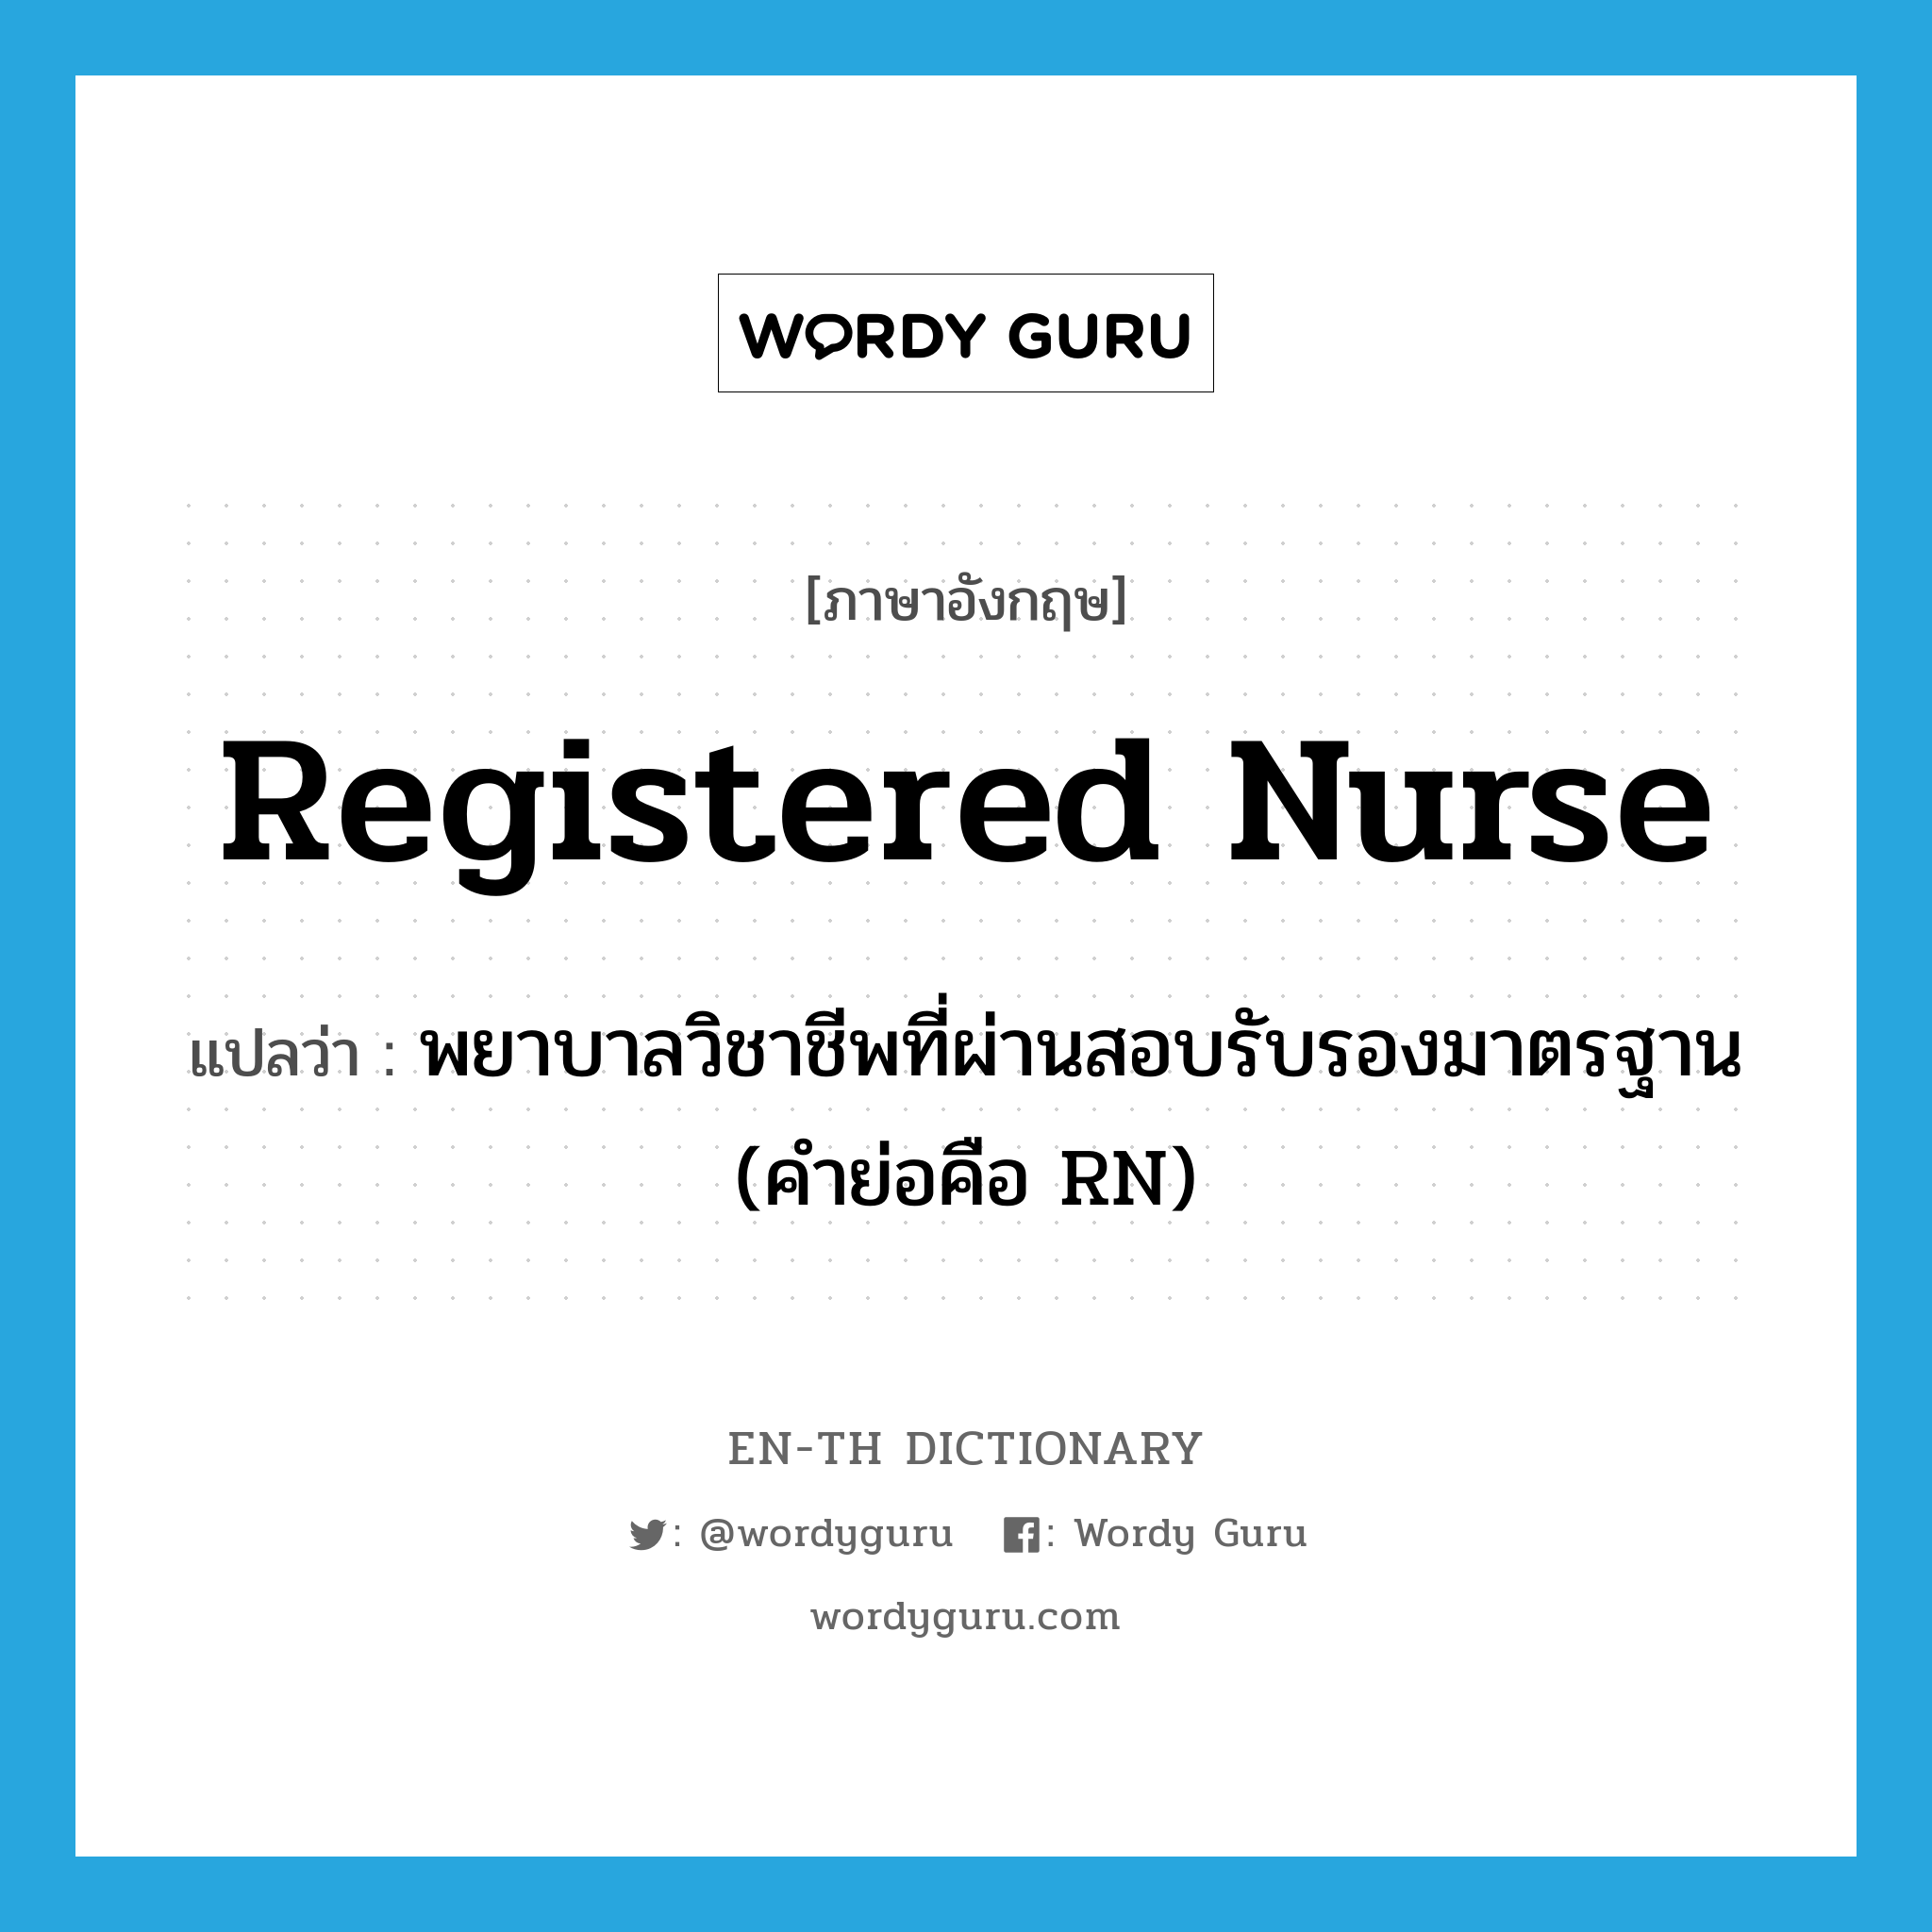 พยาบาลวิชาชีพที่ผ่านสอบรับรองมาตรฐาน (คำย่อคือ RN) ภาษาอังกฤษ?, คำศัพท์ภาษาอังกฤษ พยาบาลวิชาชีพที่ผ่านสอบรับรองมาตรฐาน (คำย่อคือ RN) แปลว่า registered nurse ประเภท N หมวด N